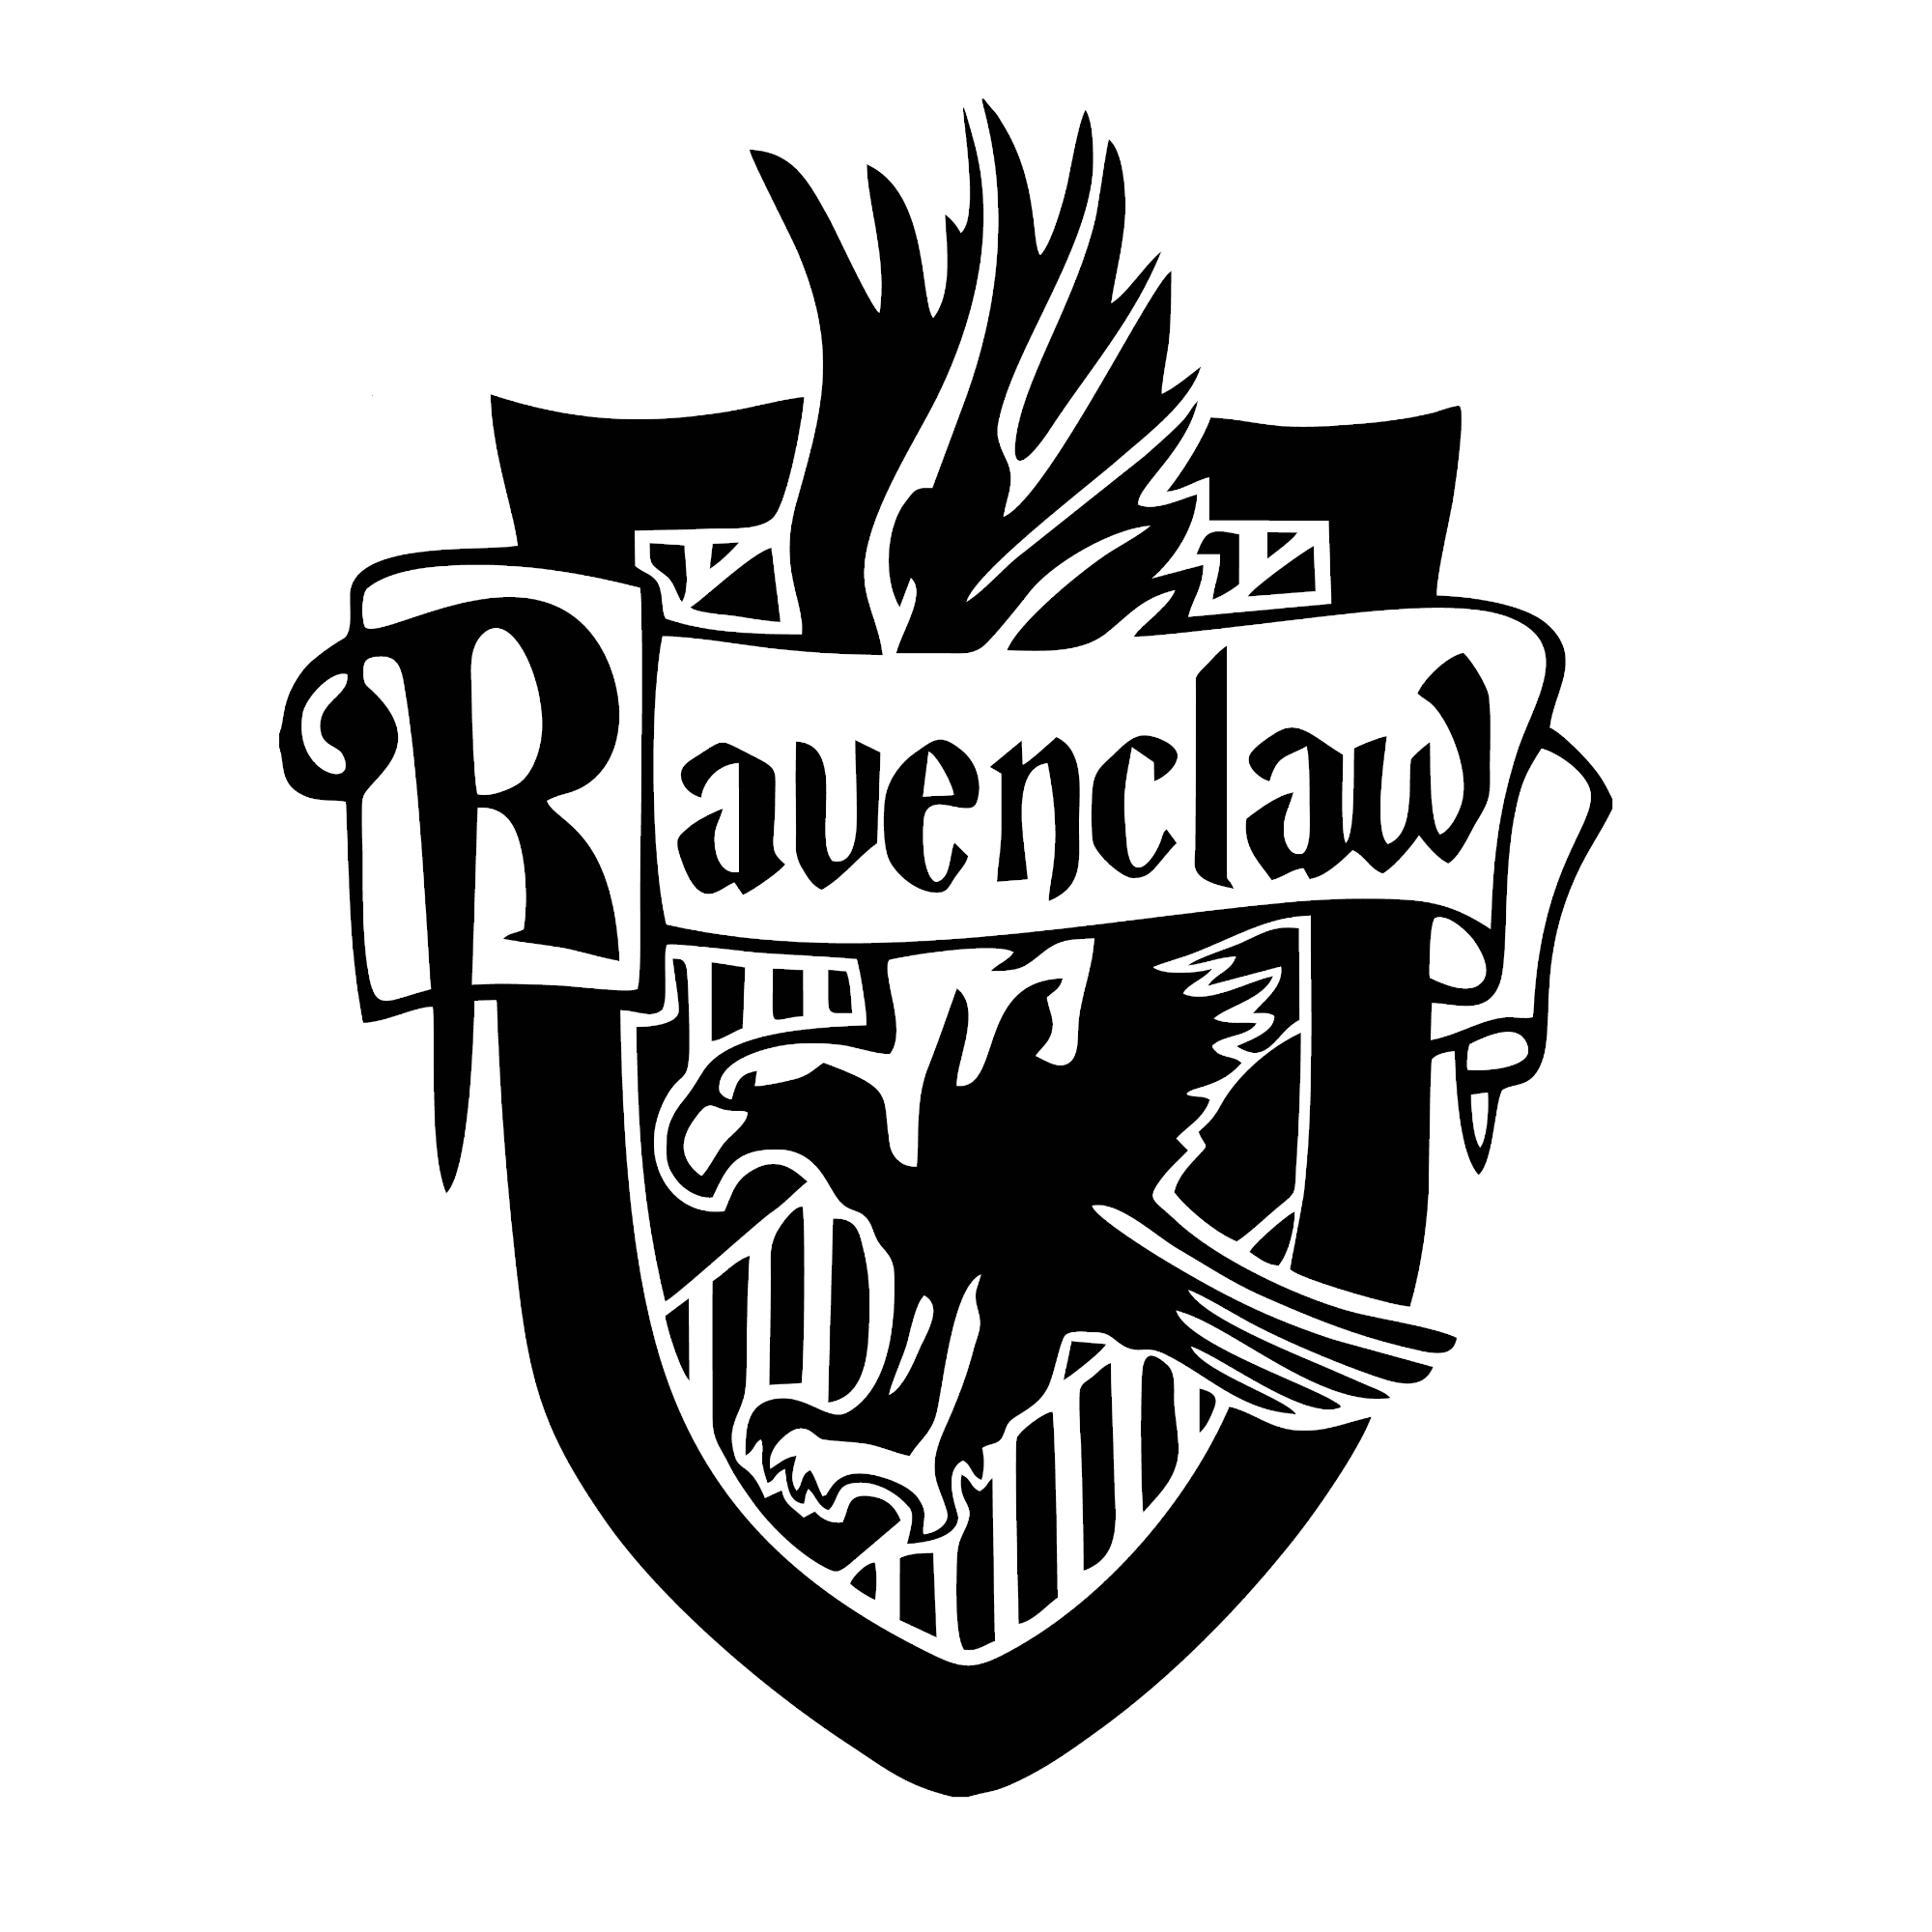 Harry Potter - Ravenclaw Wappen